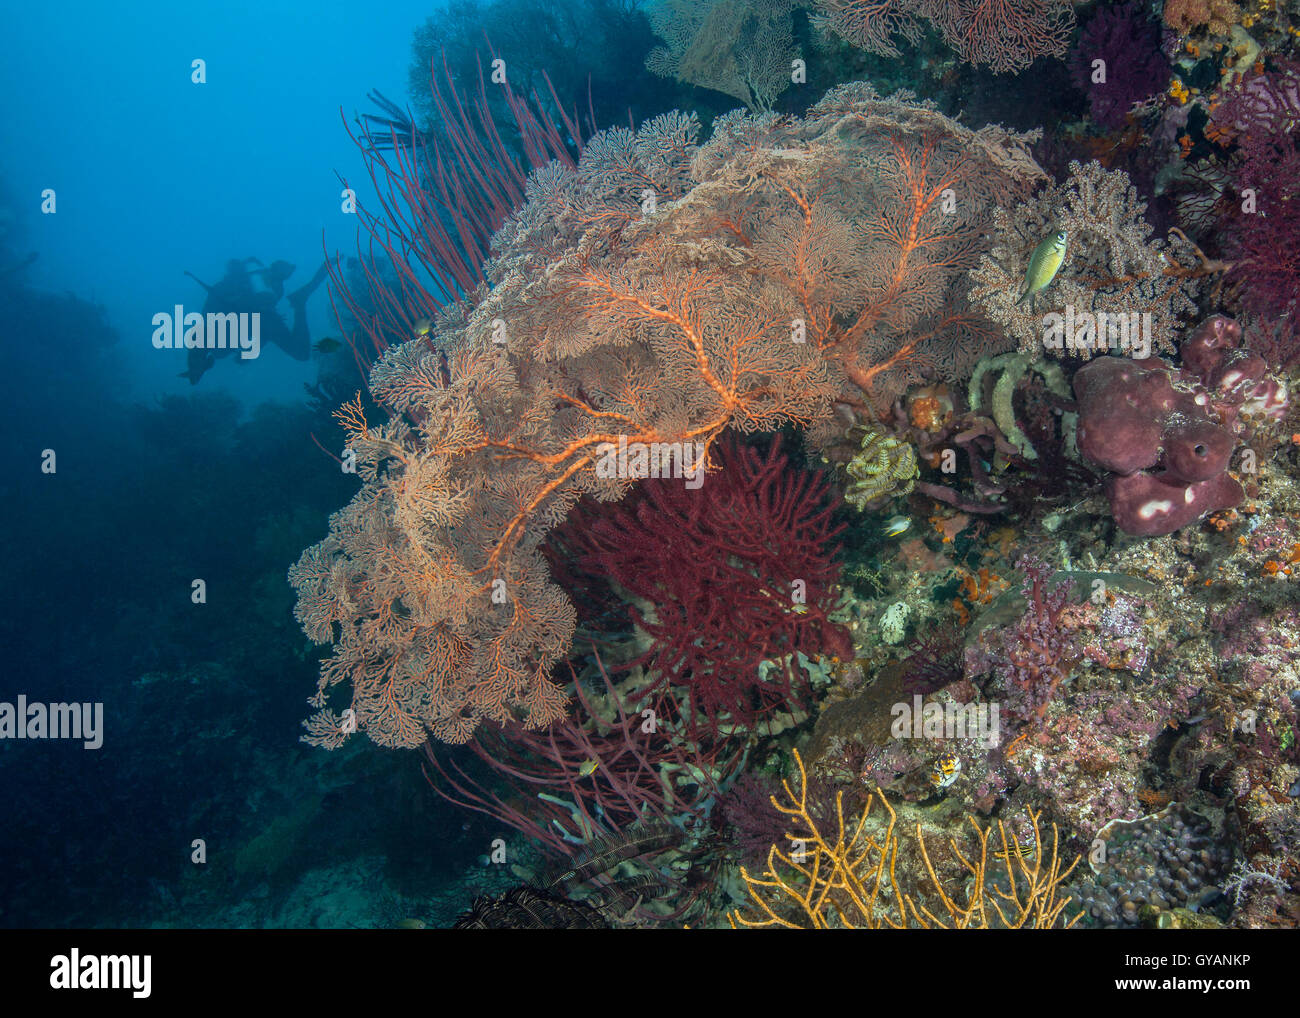 Arrecifes de coral sanos con brillantes seafans Foto de stock